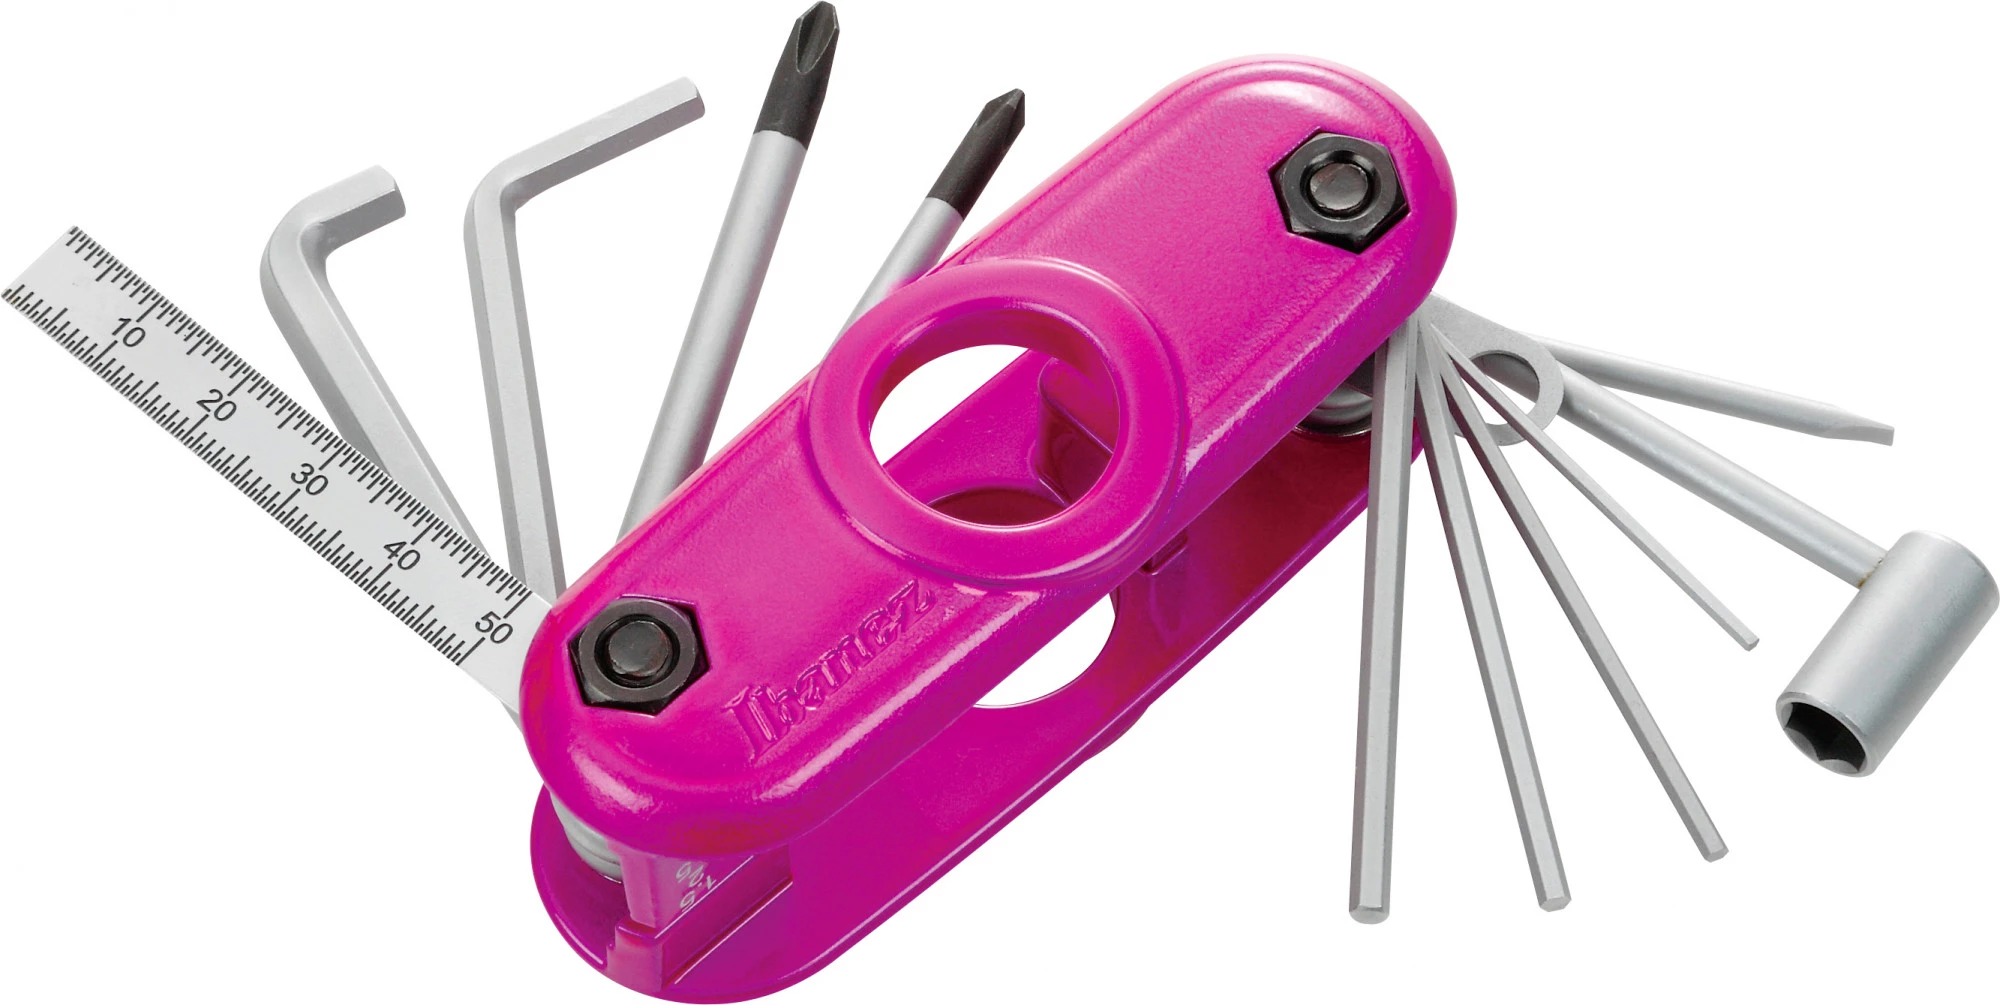 IBANEZ Multi-Tool - 11 Werkzeuge in Einem - Metallic Pink - Limited Edition